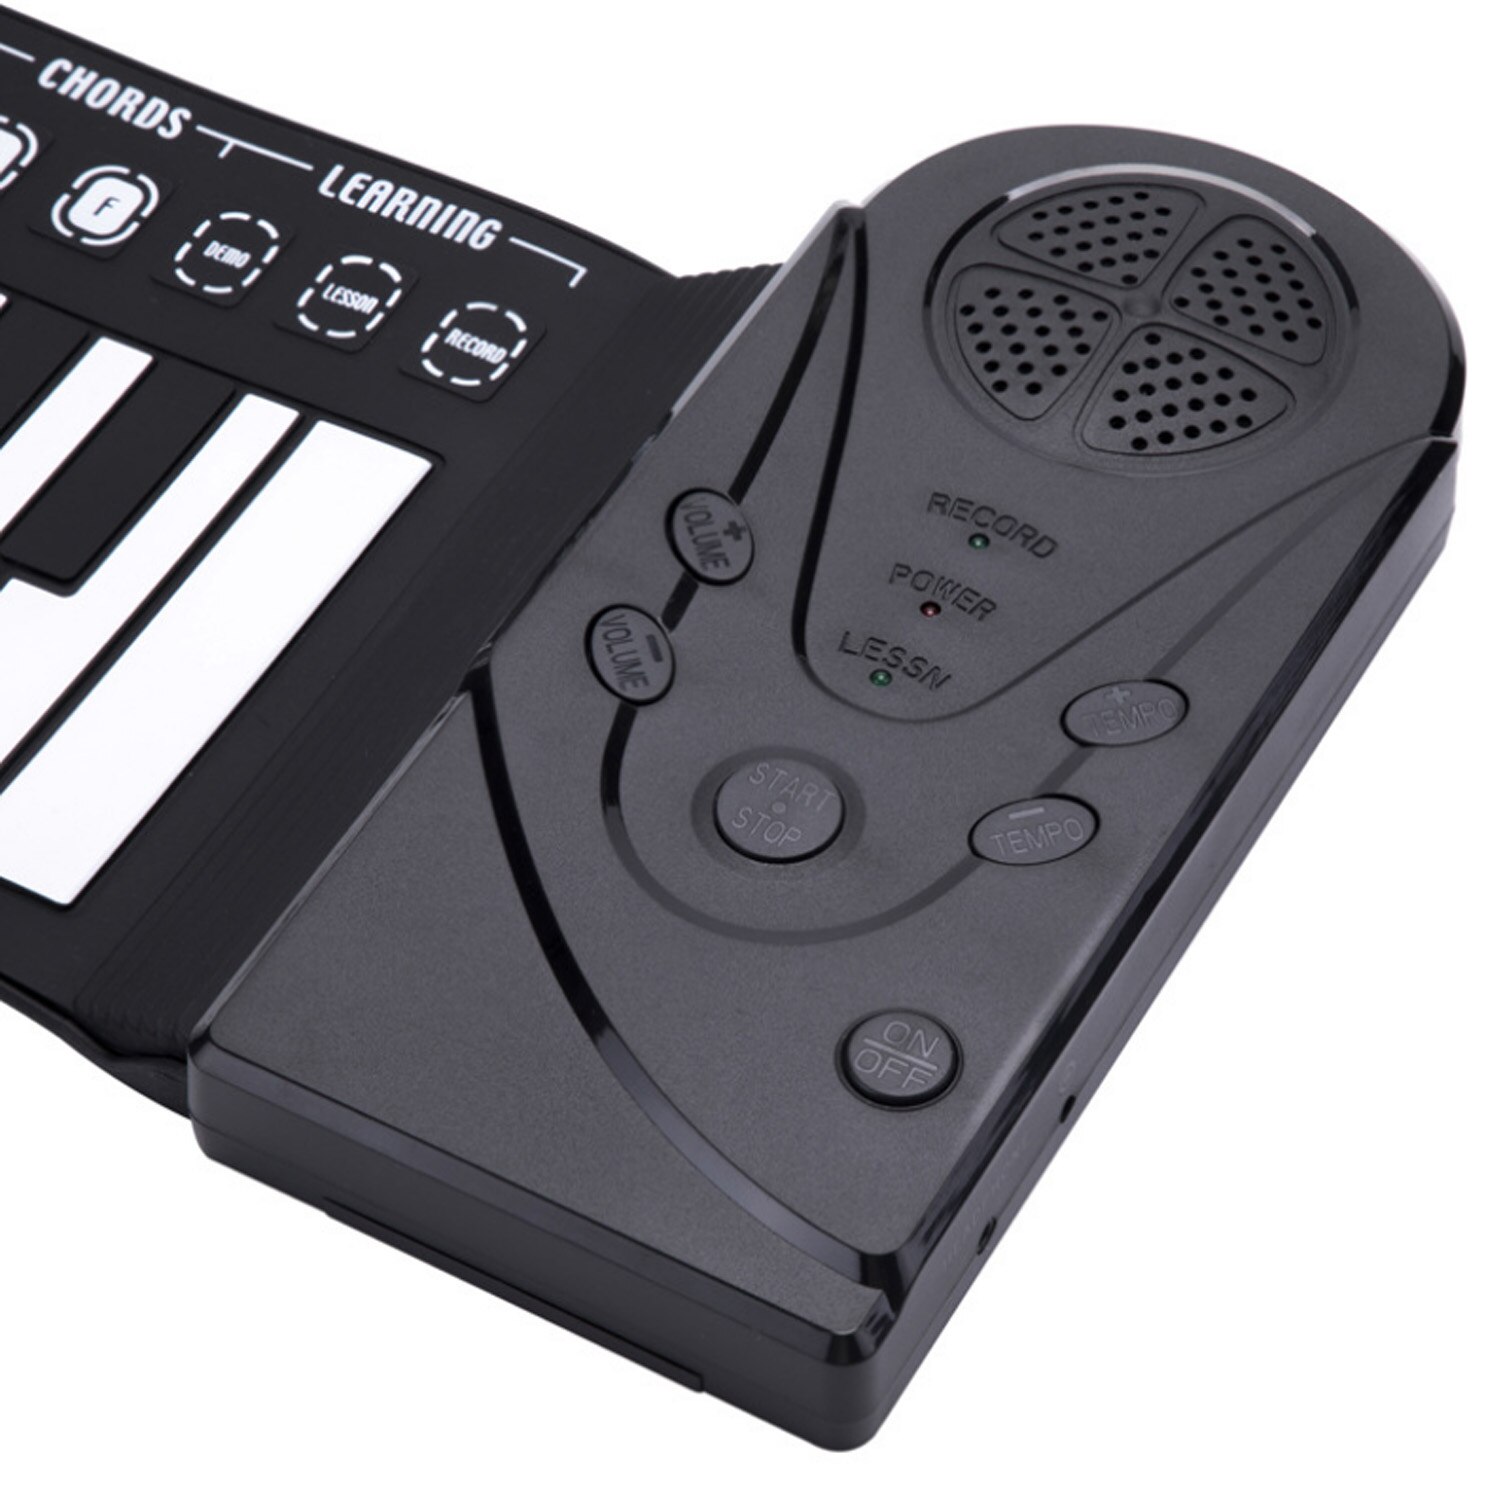 Børn nybegynder bærbar foldbar 49- nøgle elektronisk roll up keyboard klaver musikalsk digital nøglebræt musikinstrument undervisning legetøj